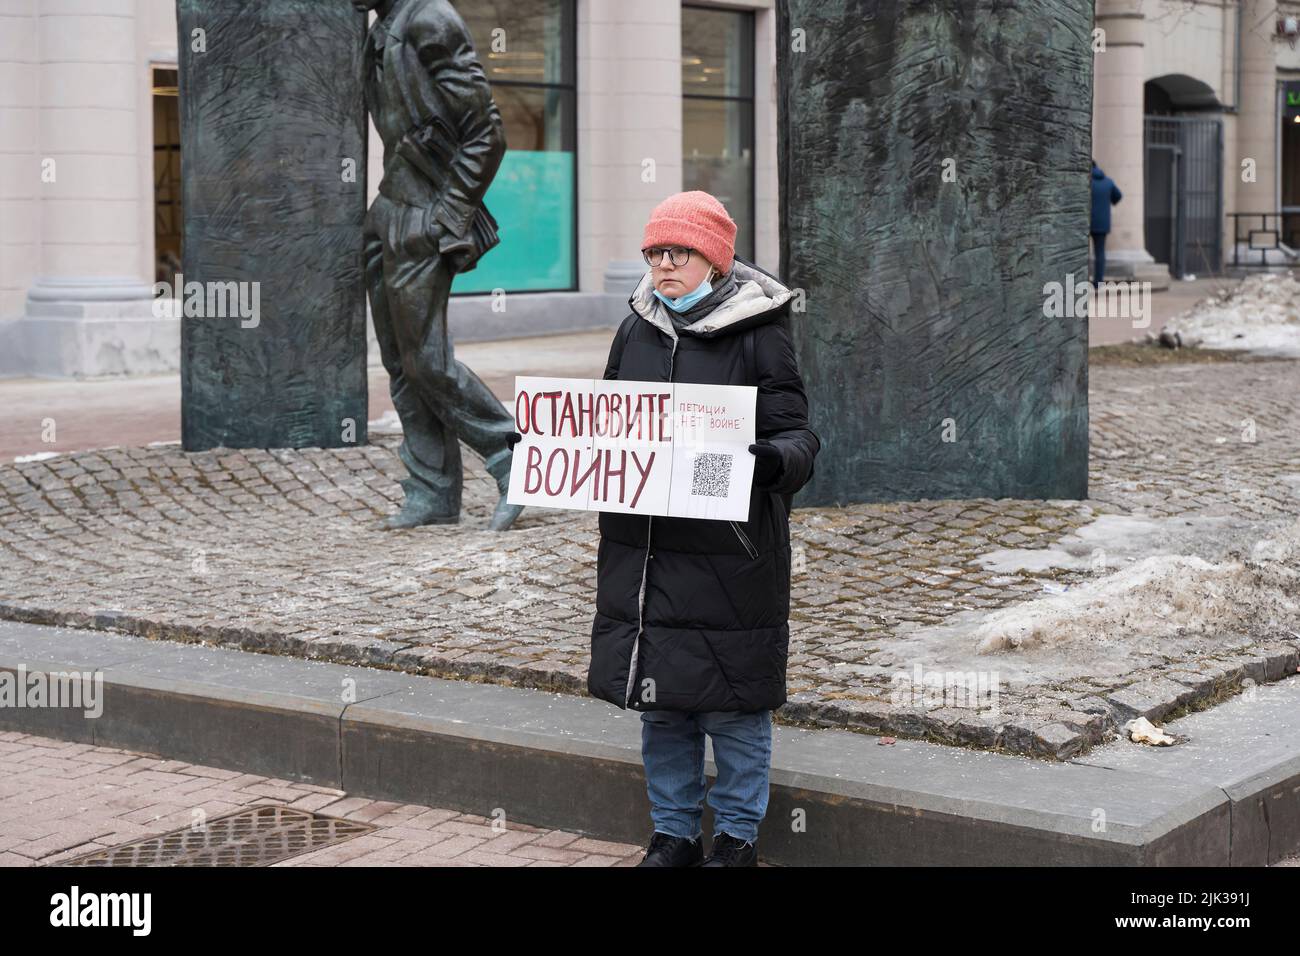 Moscú , Rusia - 26 de febrero de 2022: Protesta por un solo piquete contra la guerra de Rusia en Ucrania. La inscripción en el cartel - detener la guerra. Fotografía de alta calidad Foto de stock